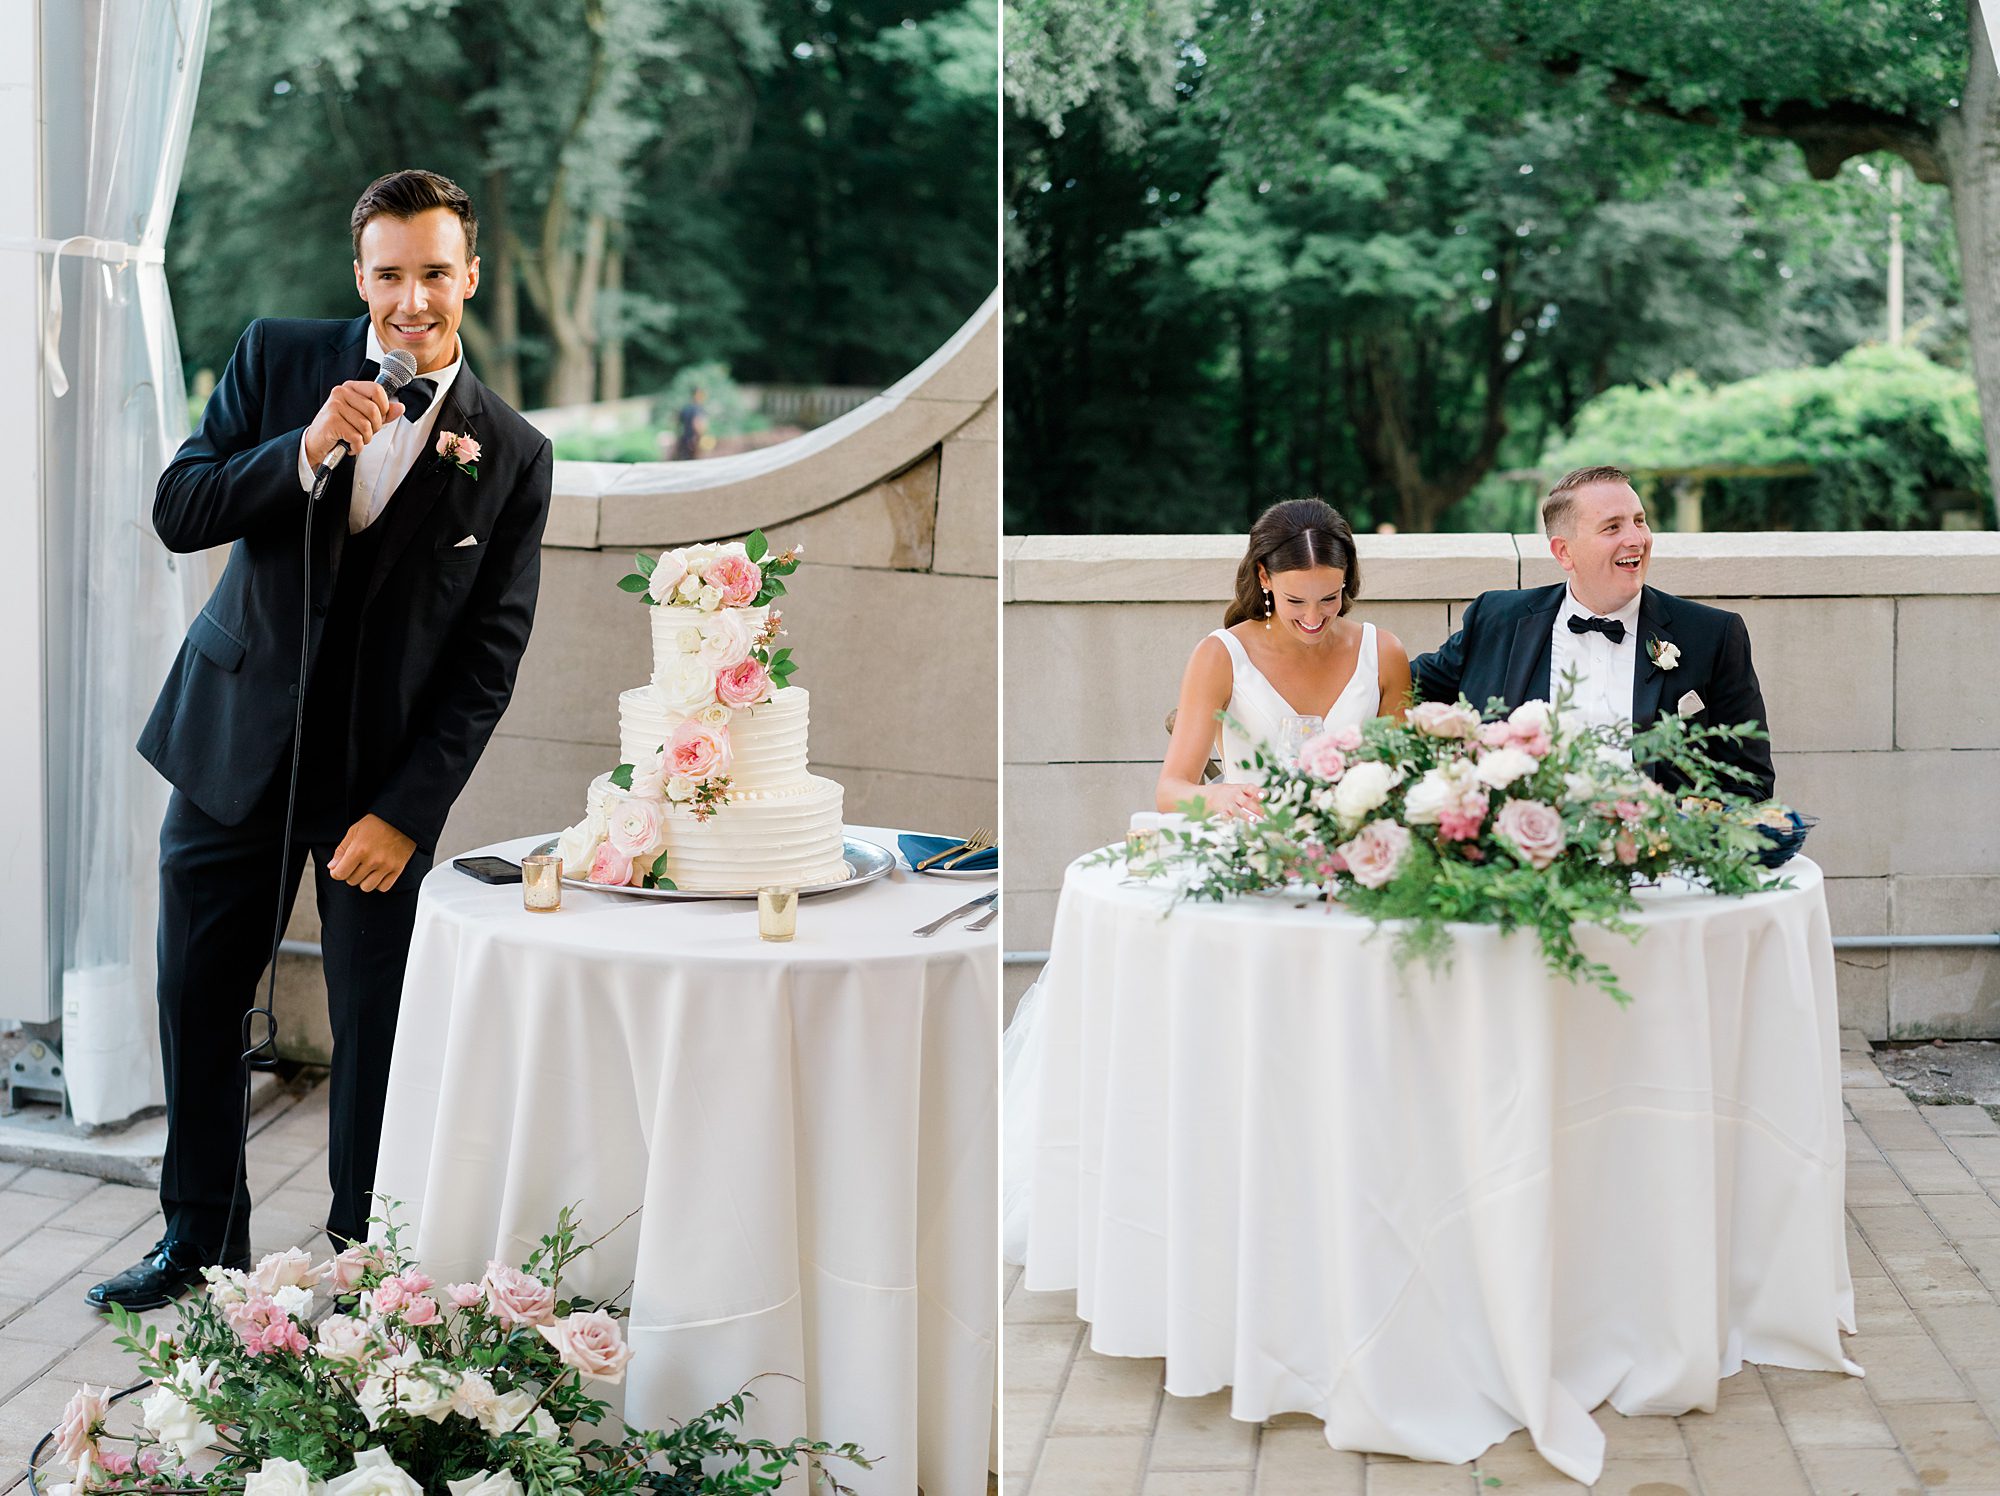 wedding toasts at Garden Wedding at Curtis Arboretum